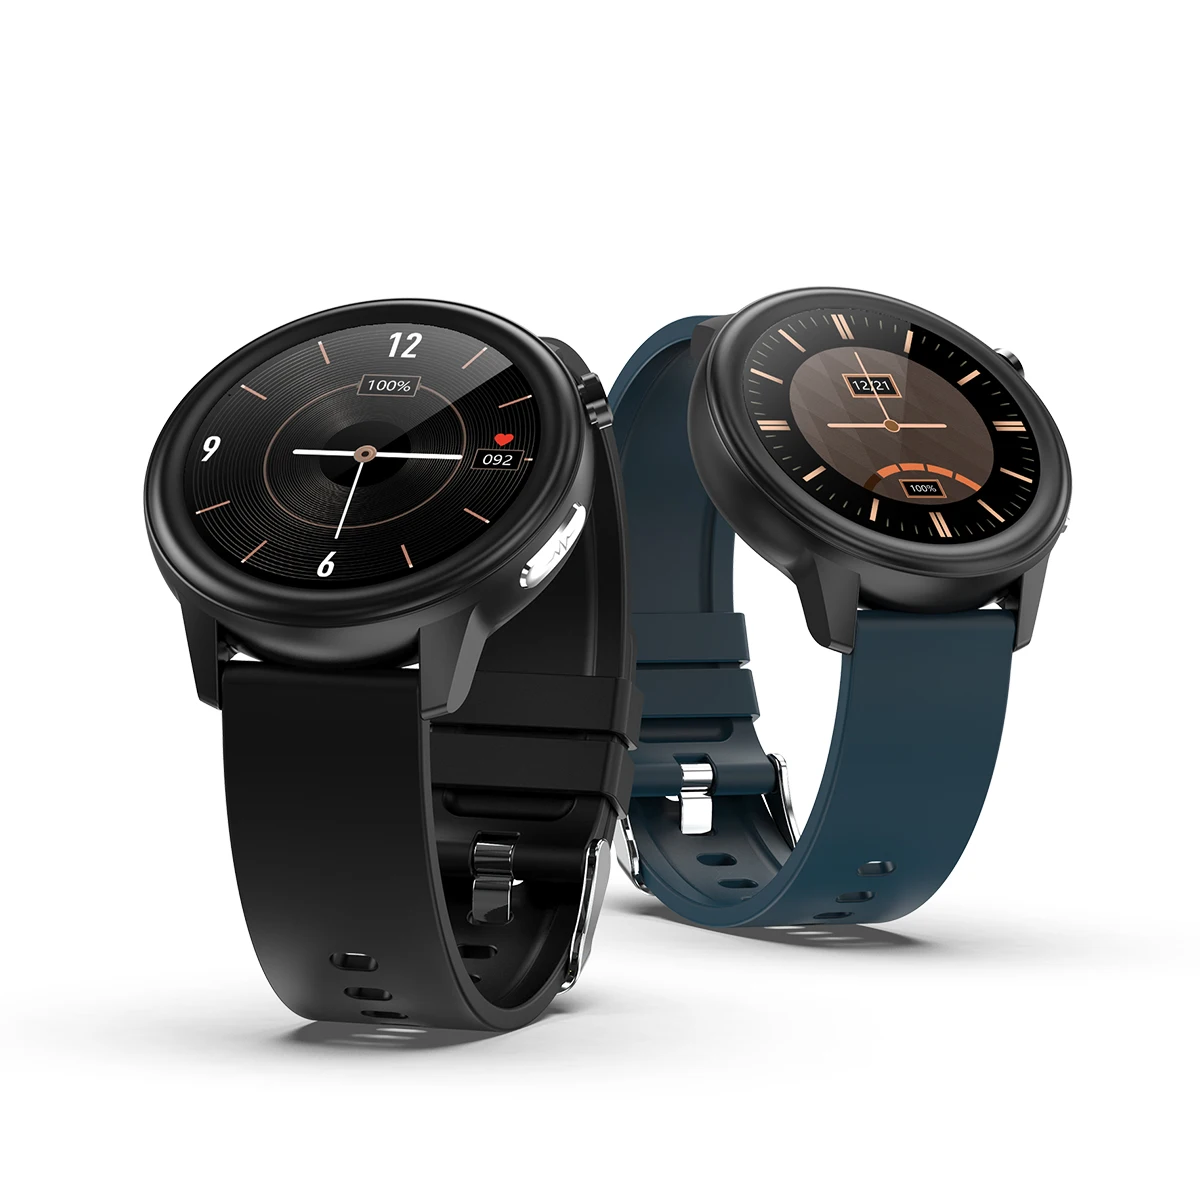 

novedades ecg ppg monitor de salud impermeable correa de cuero reloj inteligente reloj inteligente e80 smart watch, Black, blue, brown, red